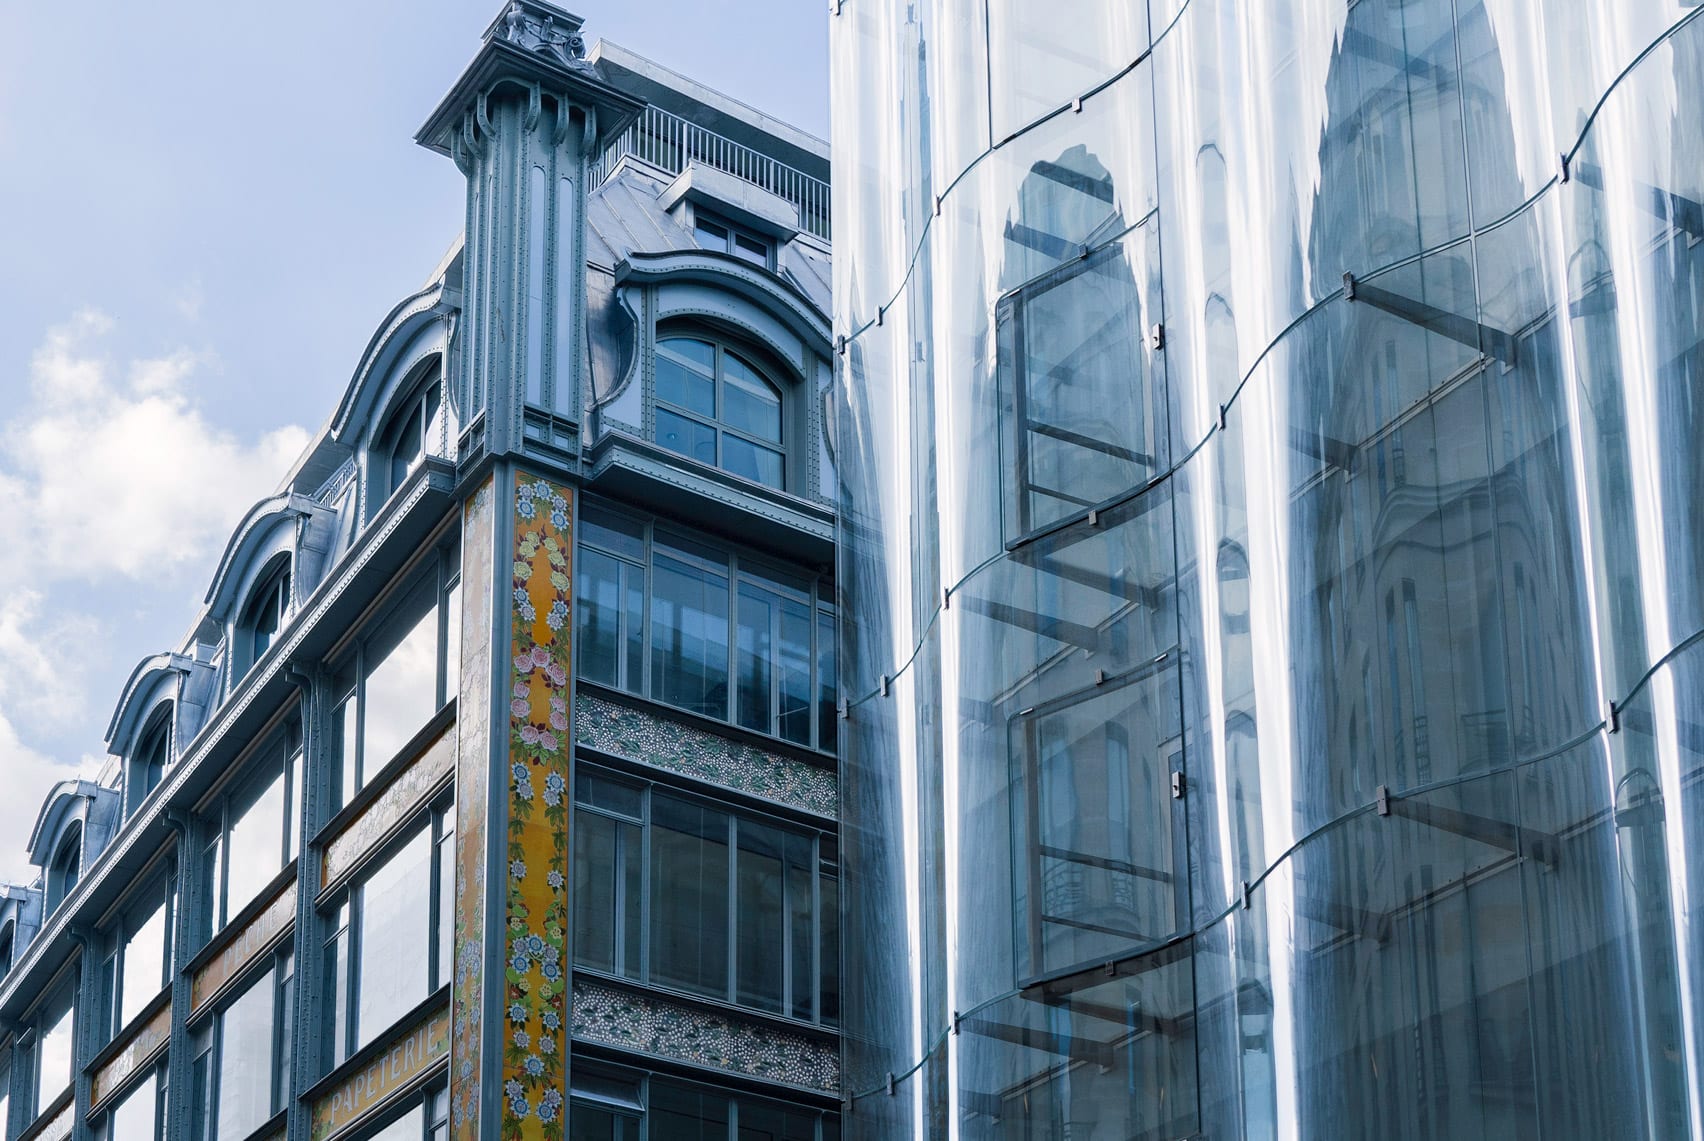 An undulating glass facade